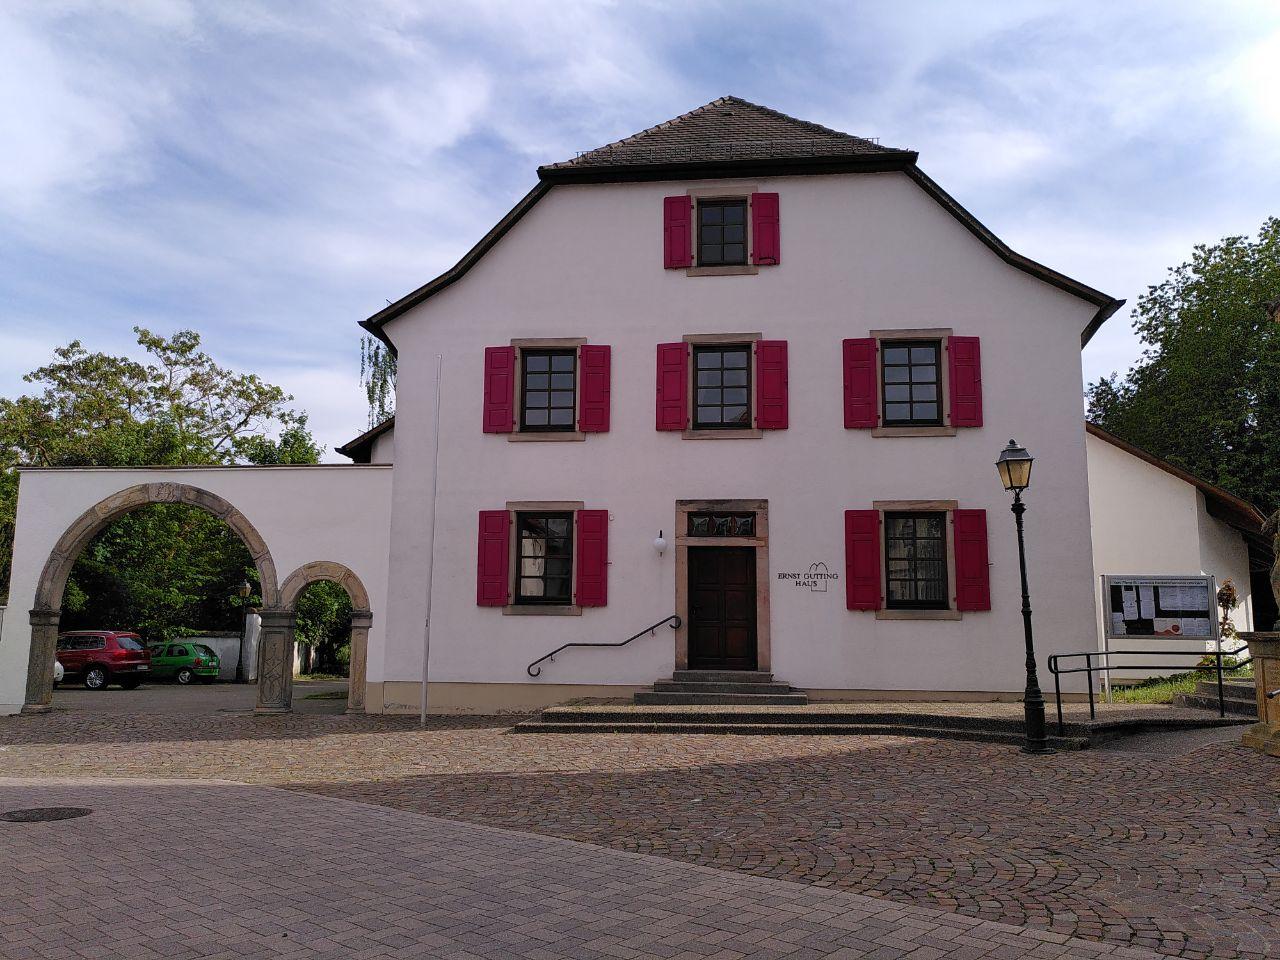 Datei:Ernst-Gutting-Haus Offenbach.jpg